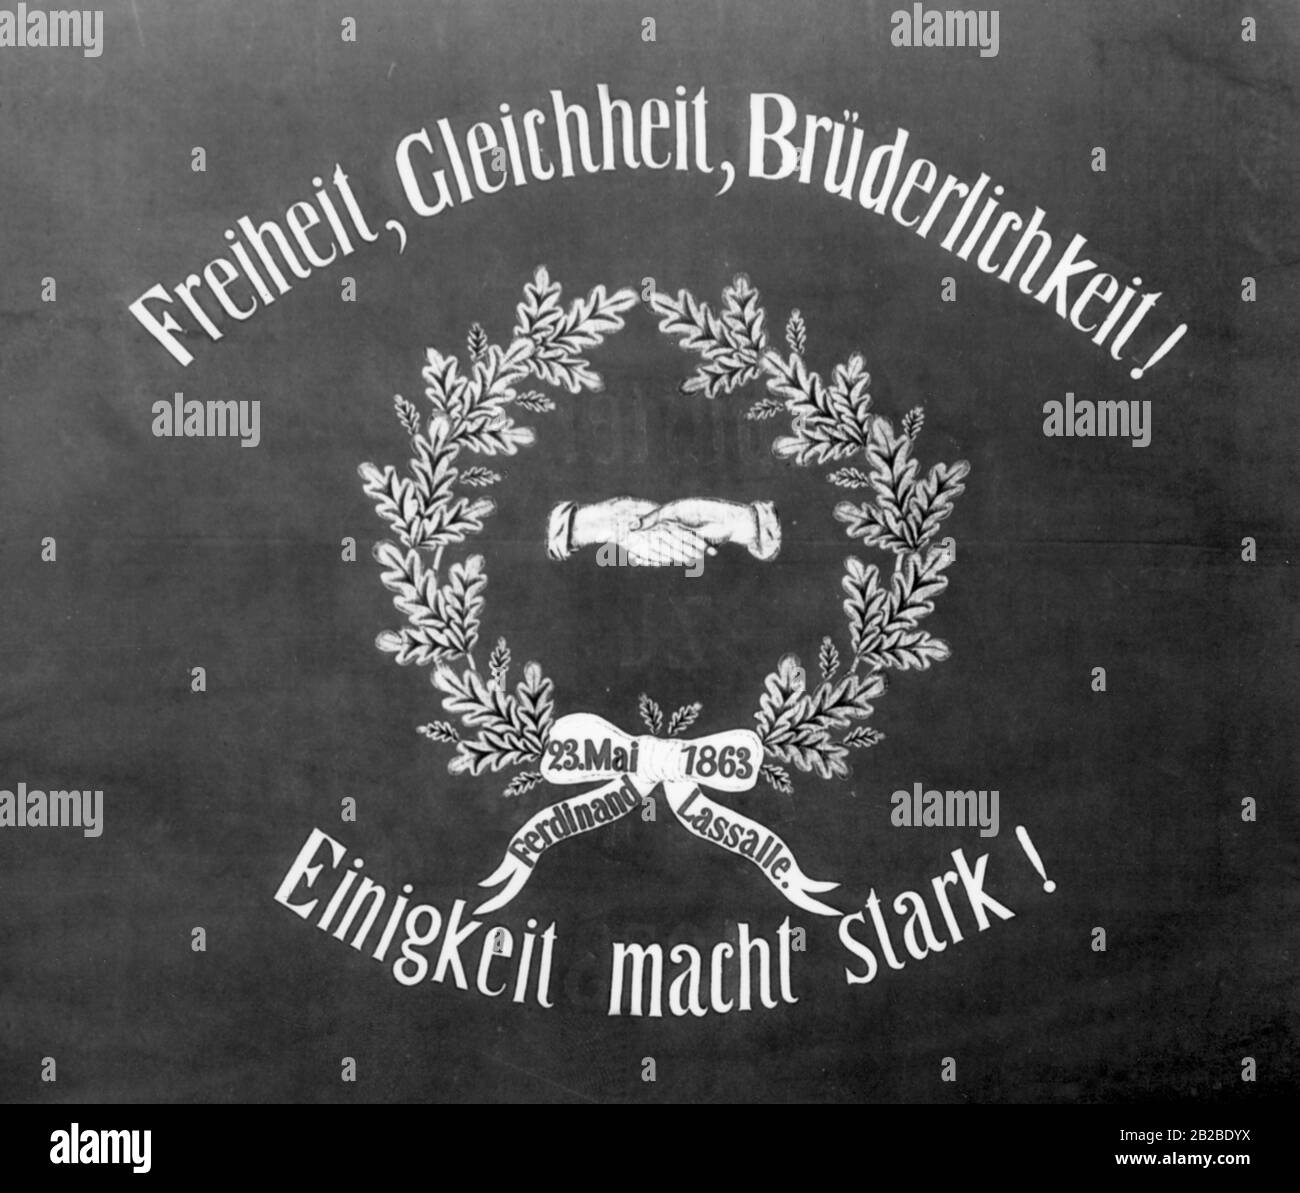 Sul banner tradizionale si trova il motto del SPD. La bandiera proviene dall'organizzazione del partito di Wroclaw. Immagine non ondulata. Foto Stock